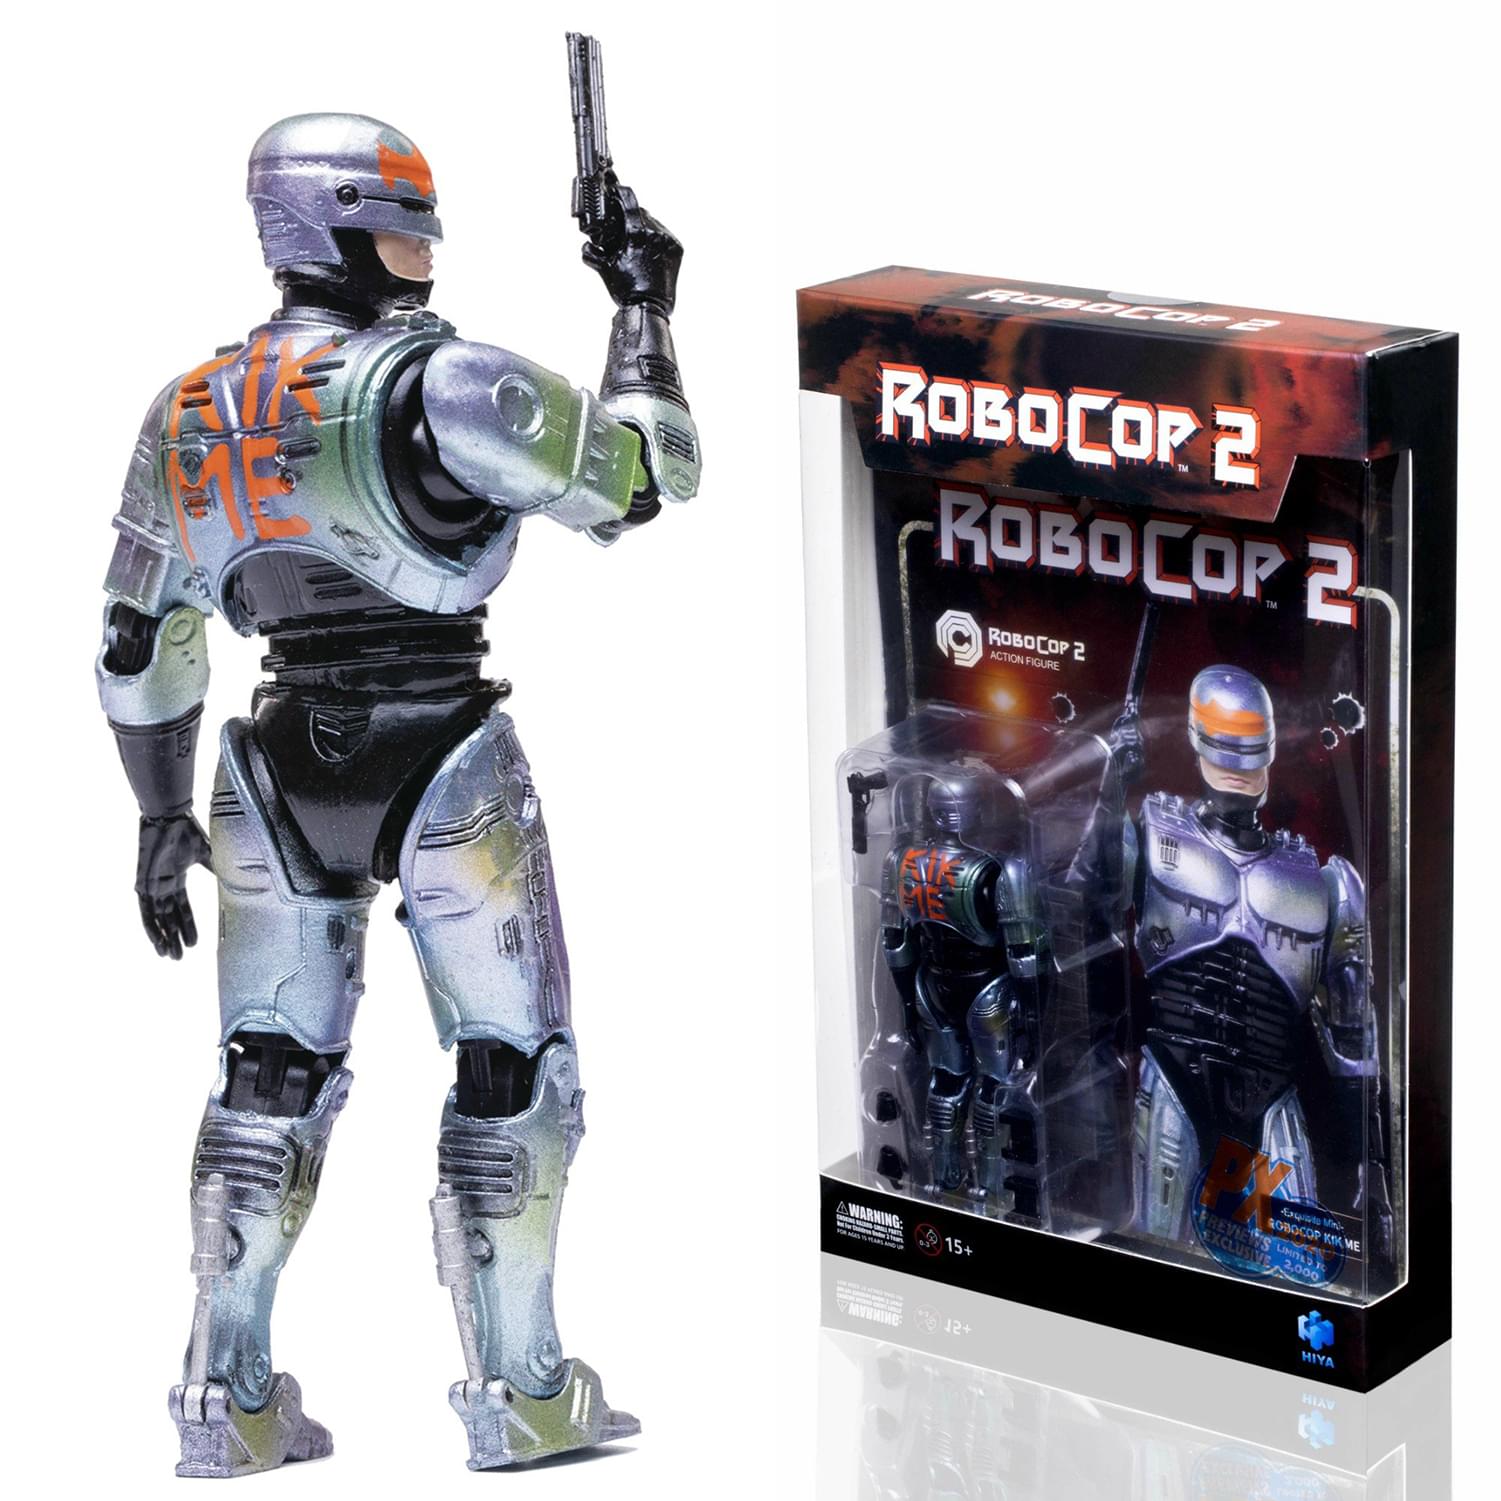 Robocop 2 Exclusive Kick Me Robocop 1:18 Scale Action Figure